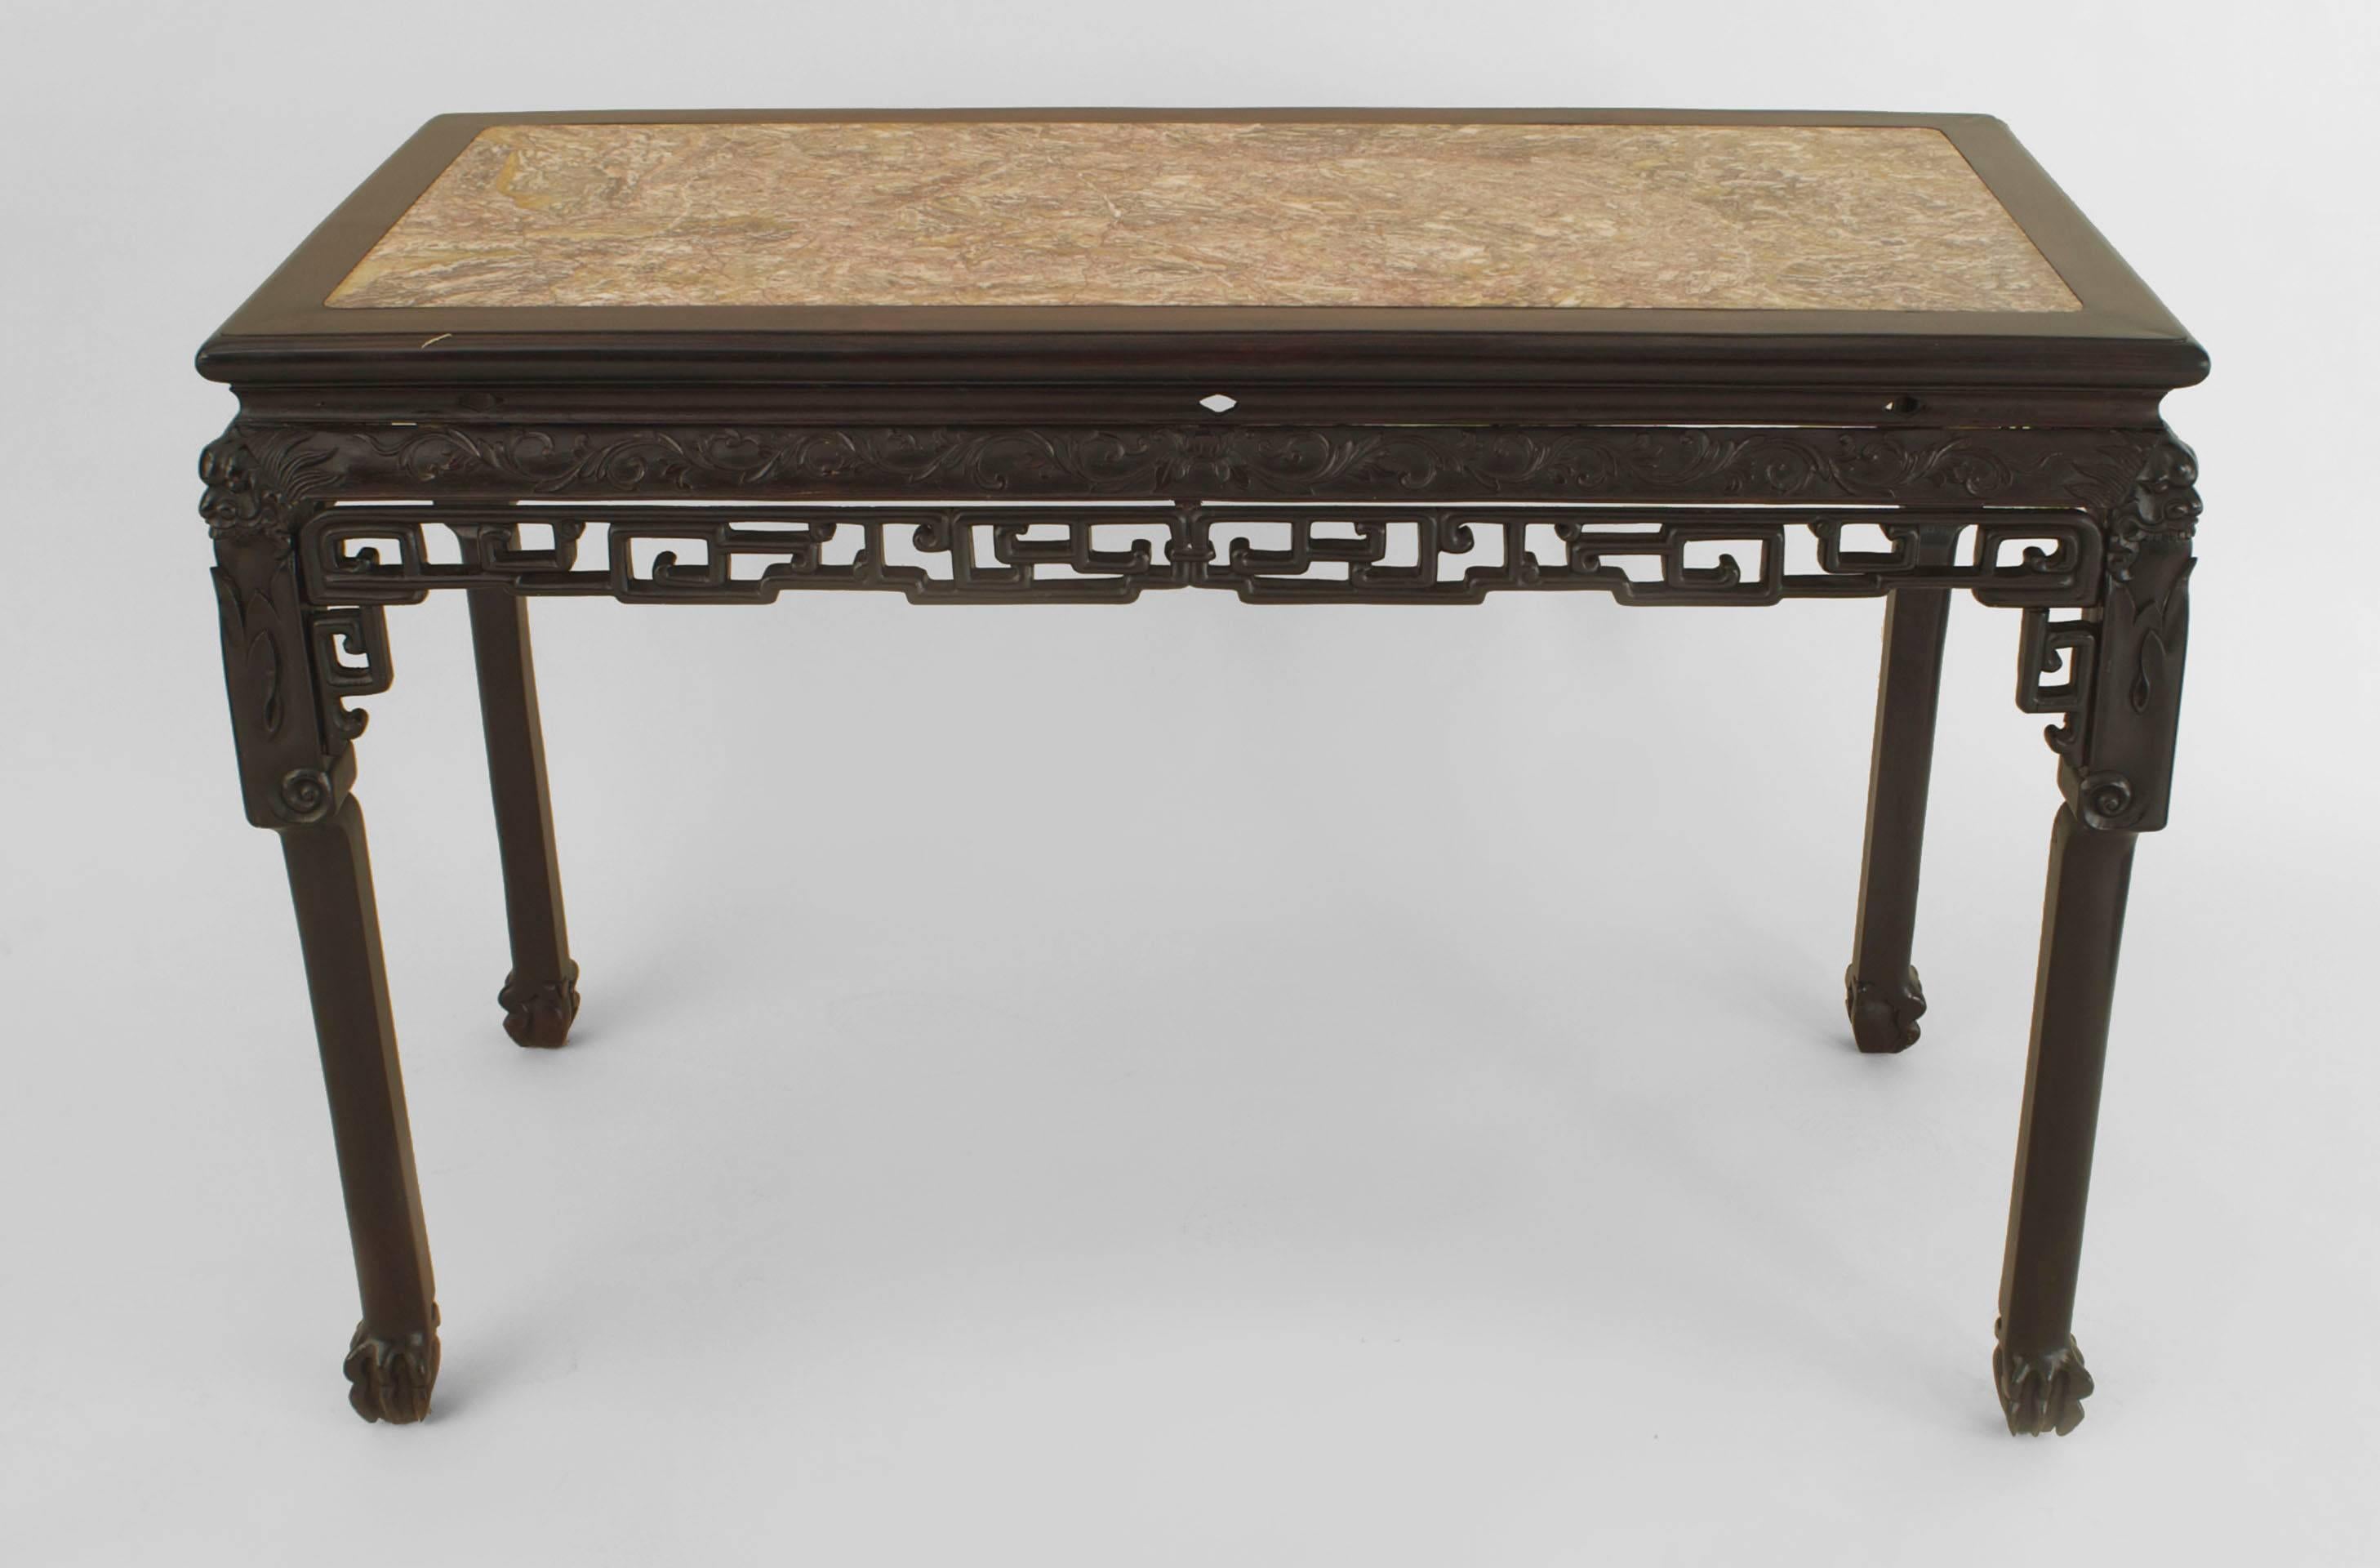 Table centrale rectangulaire en palissandre de style asiatique chinois (18/19e siècle) avec un tablier sculpté, un bord inférieur filigrané et un plateau en marbre encastré.
